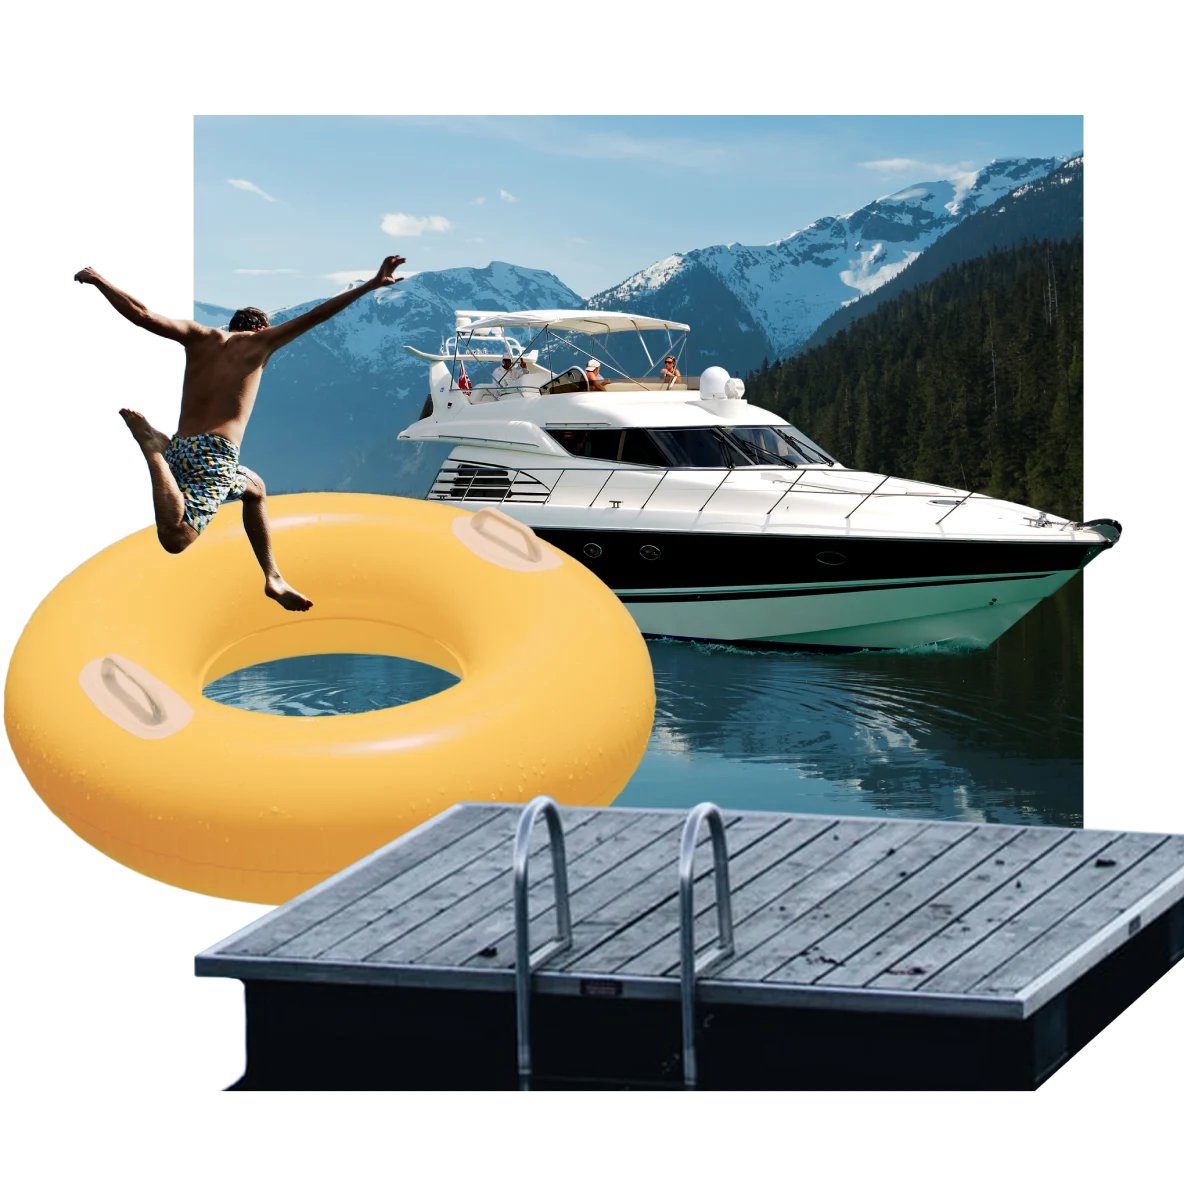 Eine Collage mit Gegenständen zum Thema See: in der Mitte ein Boot auf einem stahlblauen See mit einem Steg im Vordergrund. Ein Schwimmer springt durch einen riesigen gelben Schwimmring. Im Hintergrund schneebedeckte Berge.